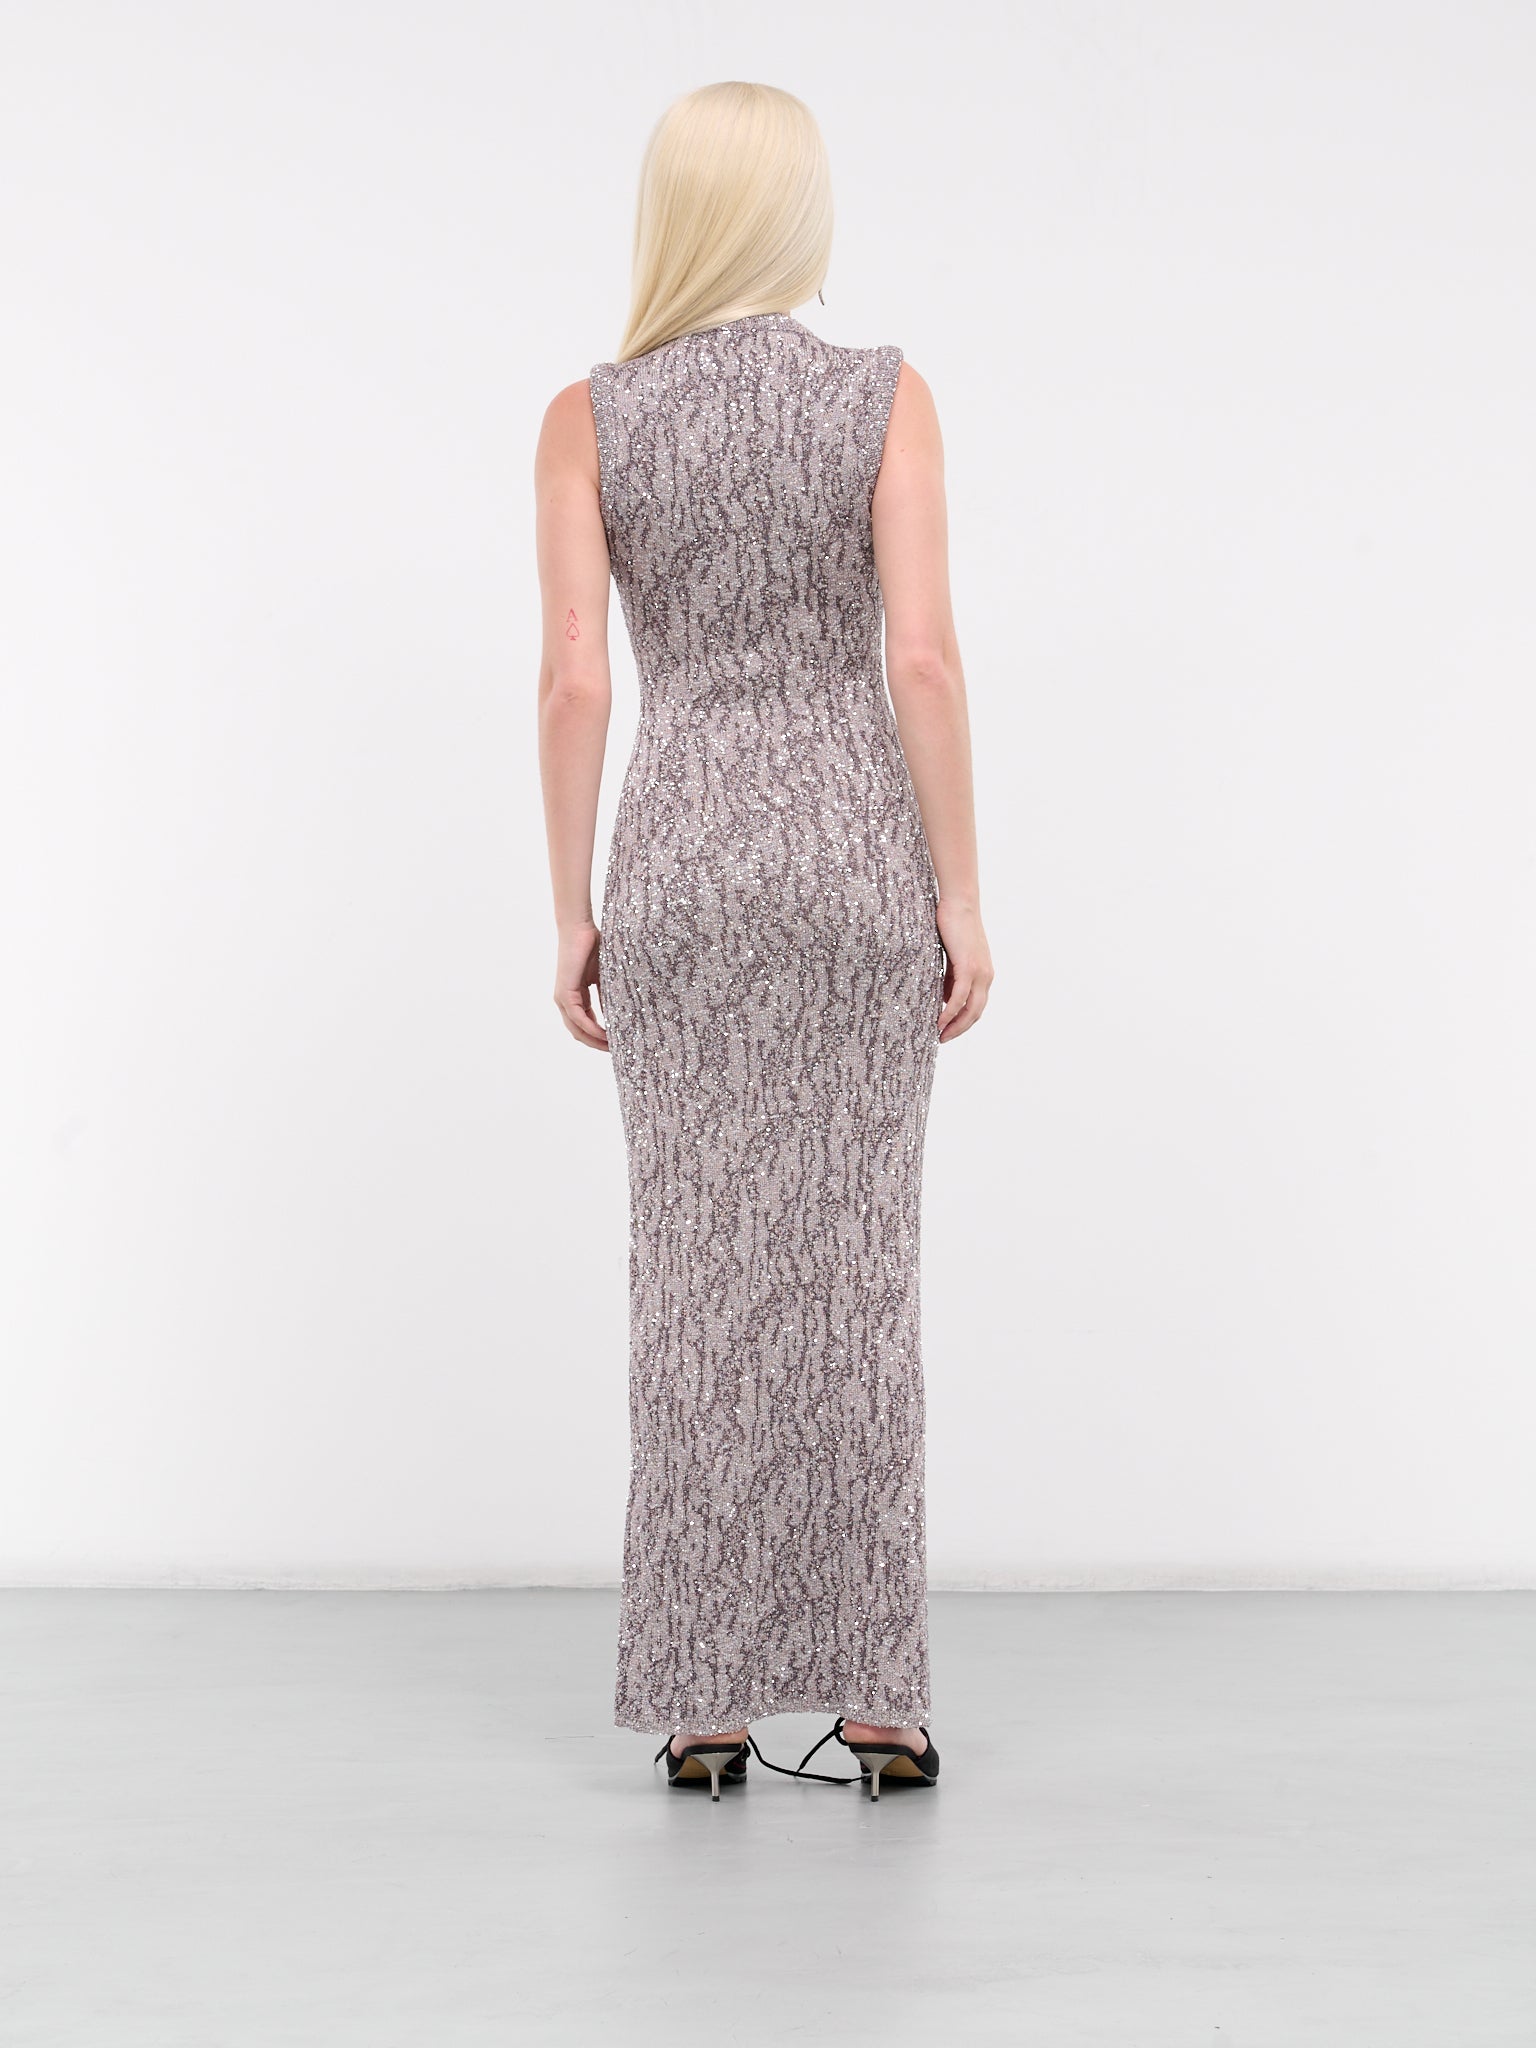 Jacquard Knit Dress (A20687-DARK-GREY)